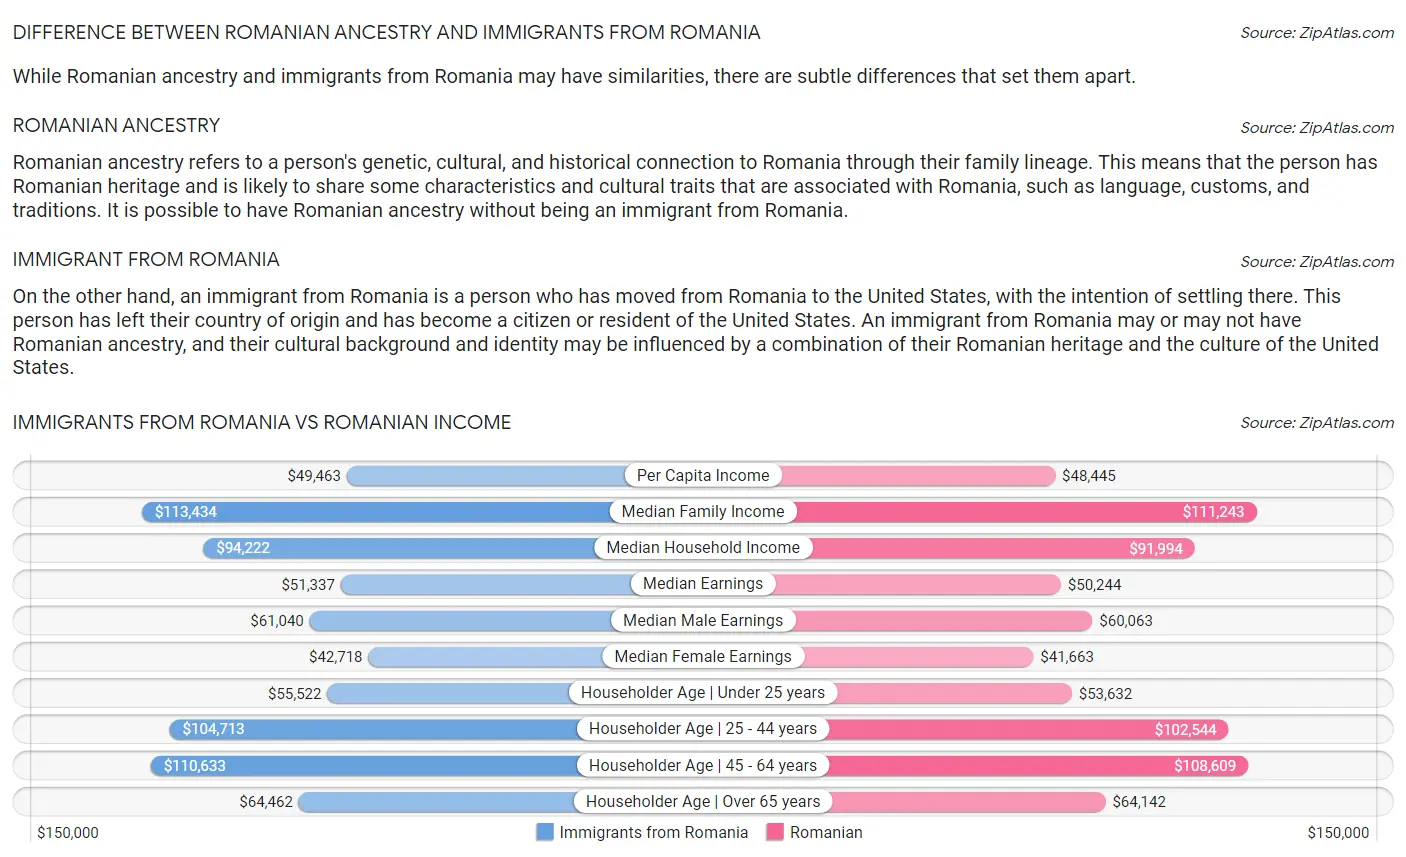 Immigrants from Romania vs Romanian Income